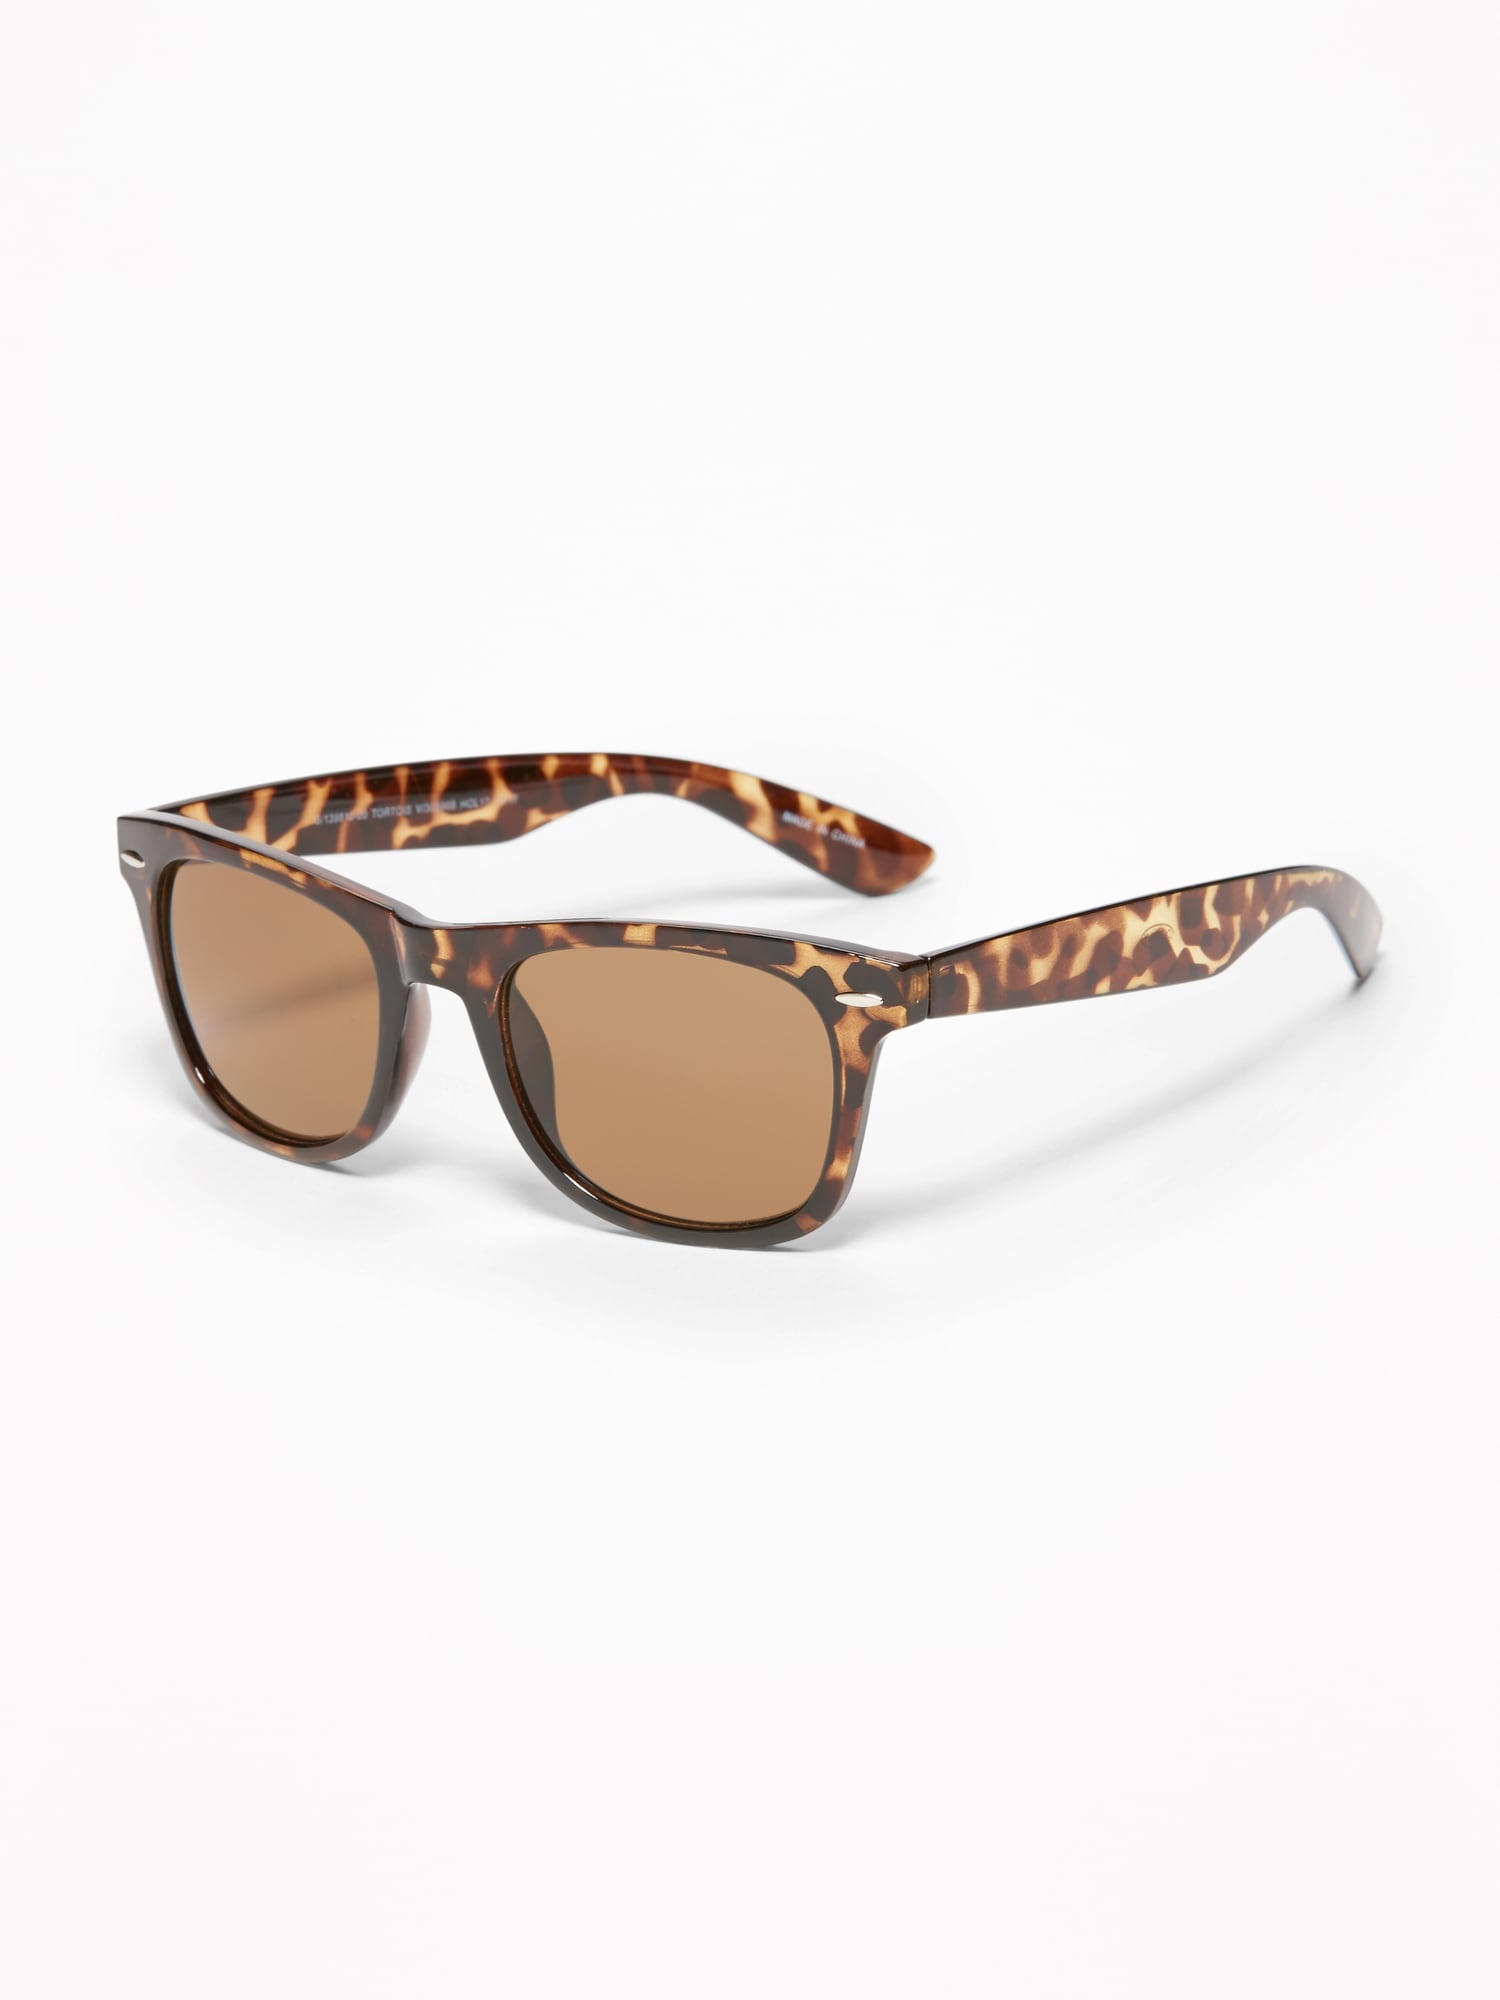 Old Navy - Tortoiseshell Square-Frame Sunglasses For Women